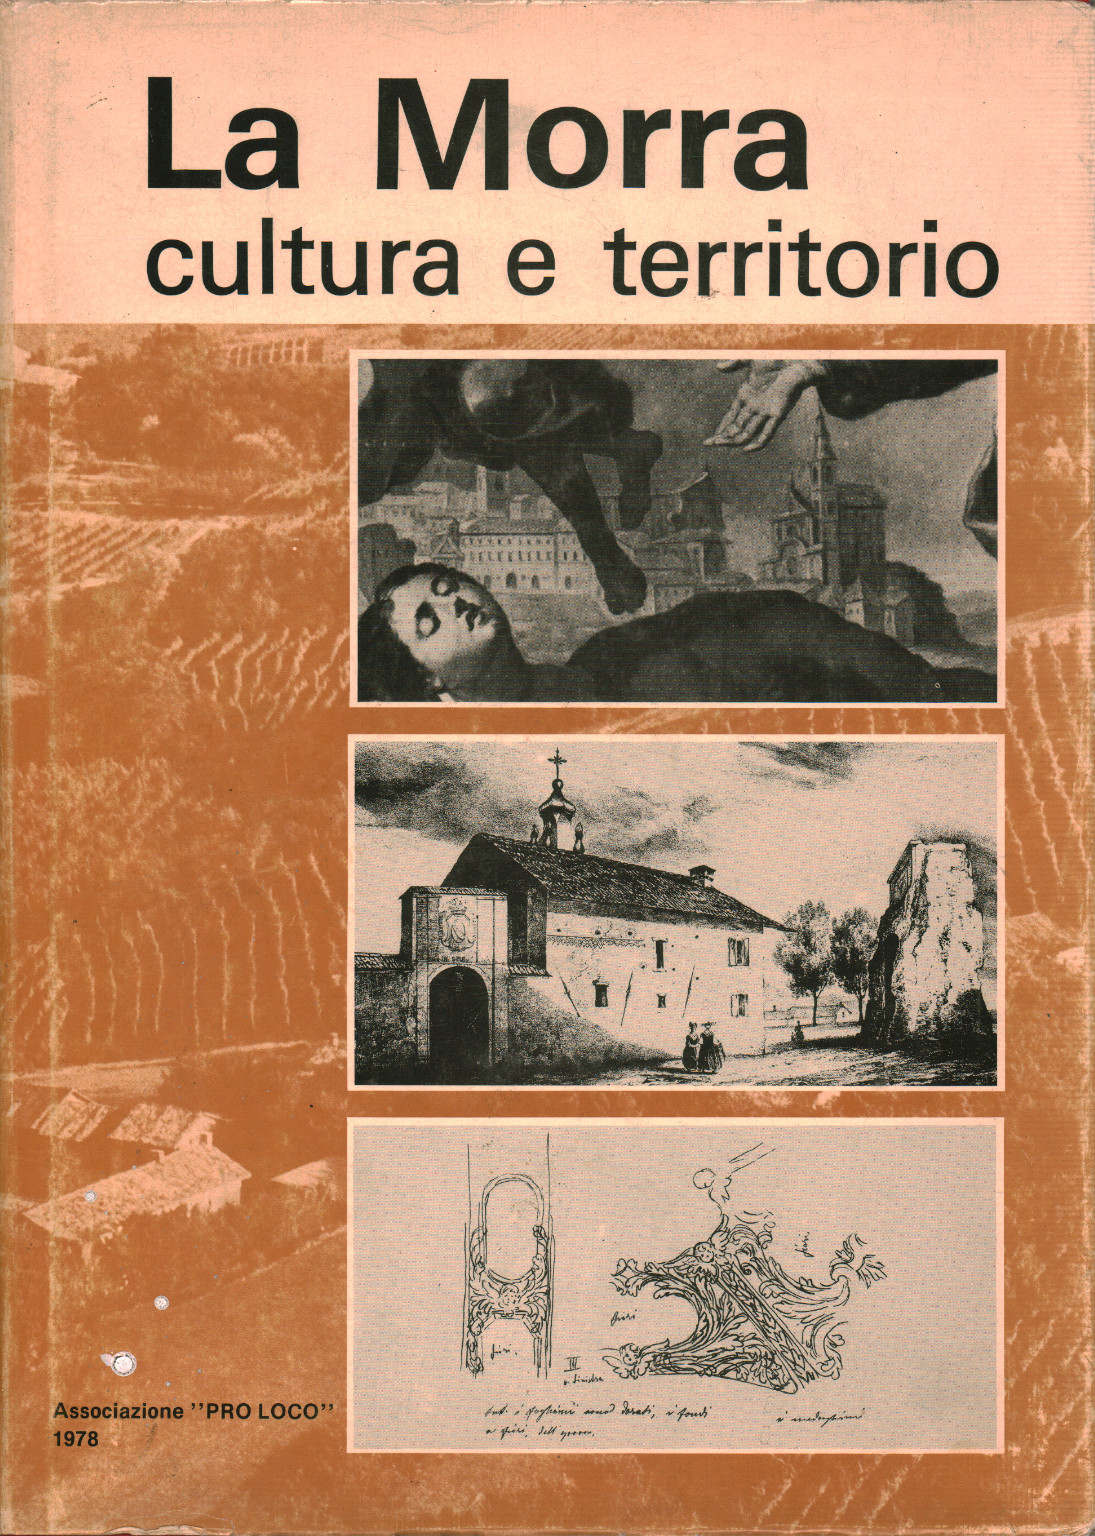 La Morra cultura e territorio, s.a.